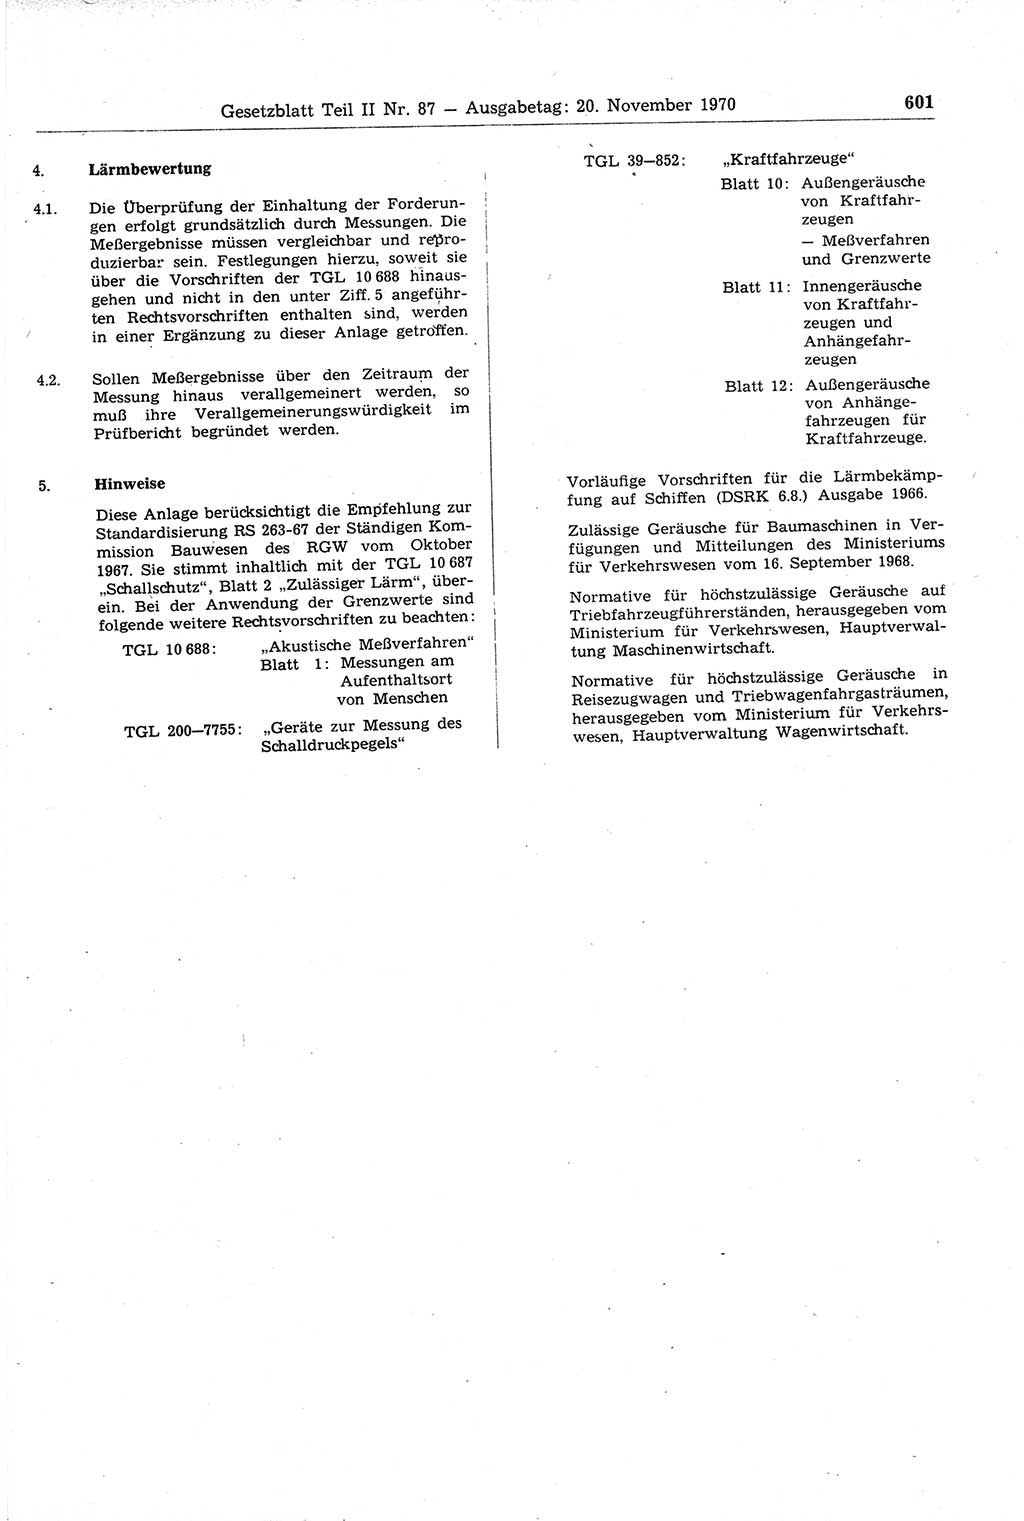 Gesetzblatt (GBl.) der Deutschen Demokratischen Republik (DDR) Teil ⅠⅠ 1970, Seite 601 (GBl. DDR ⅠⅠ 1970, S. 601)